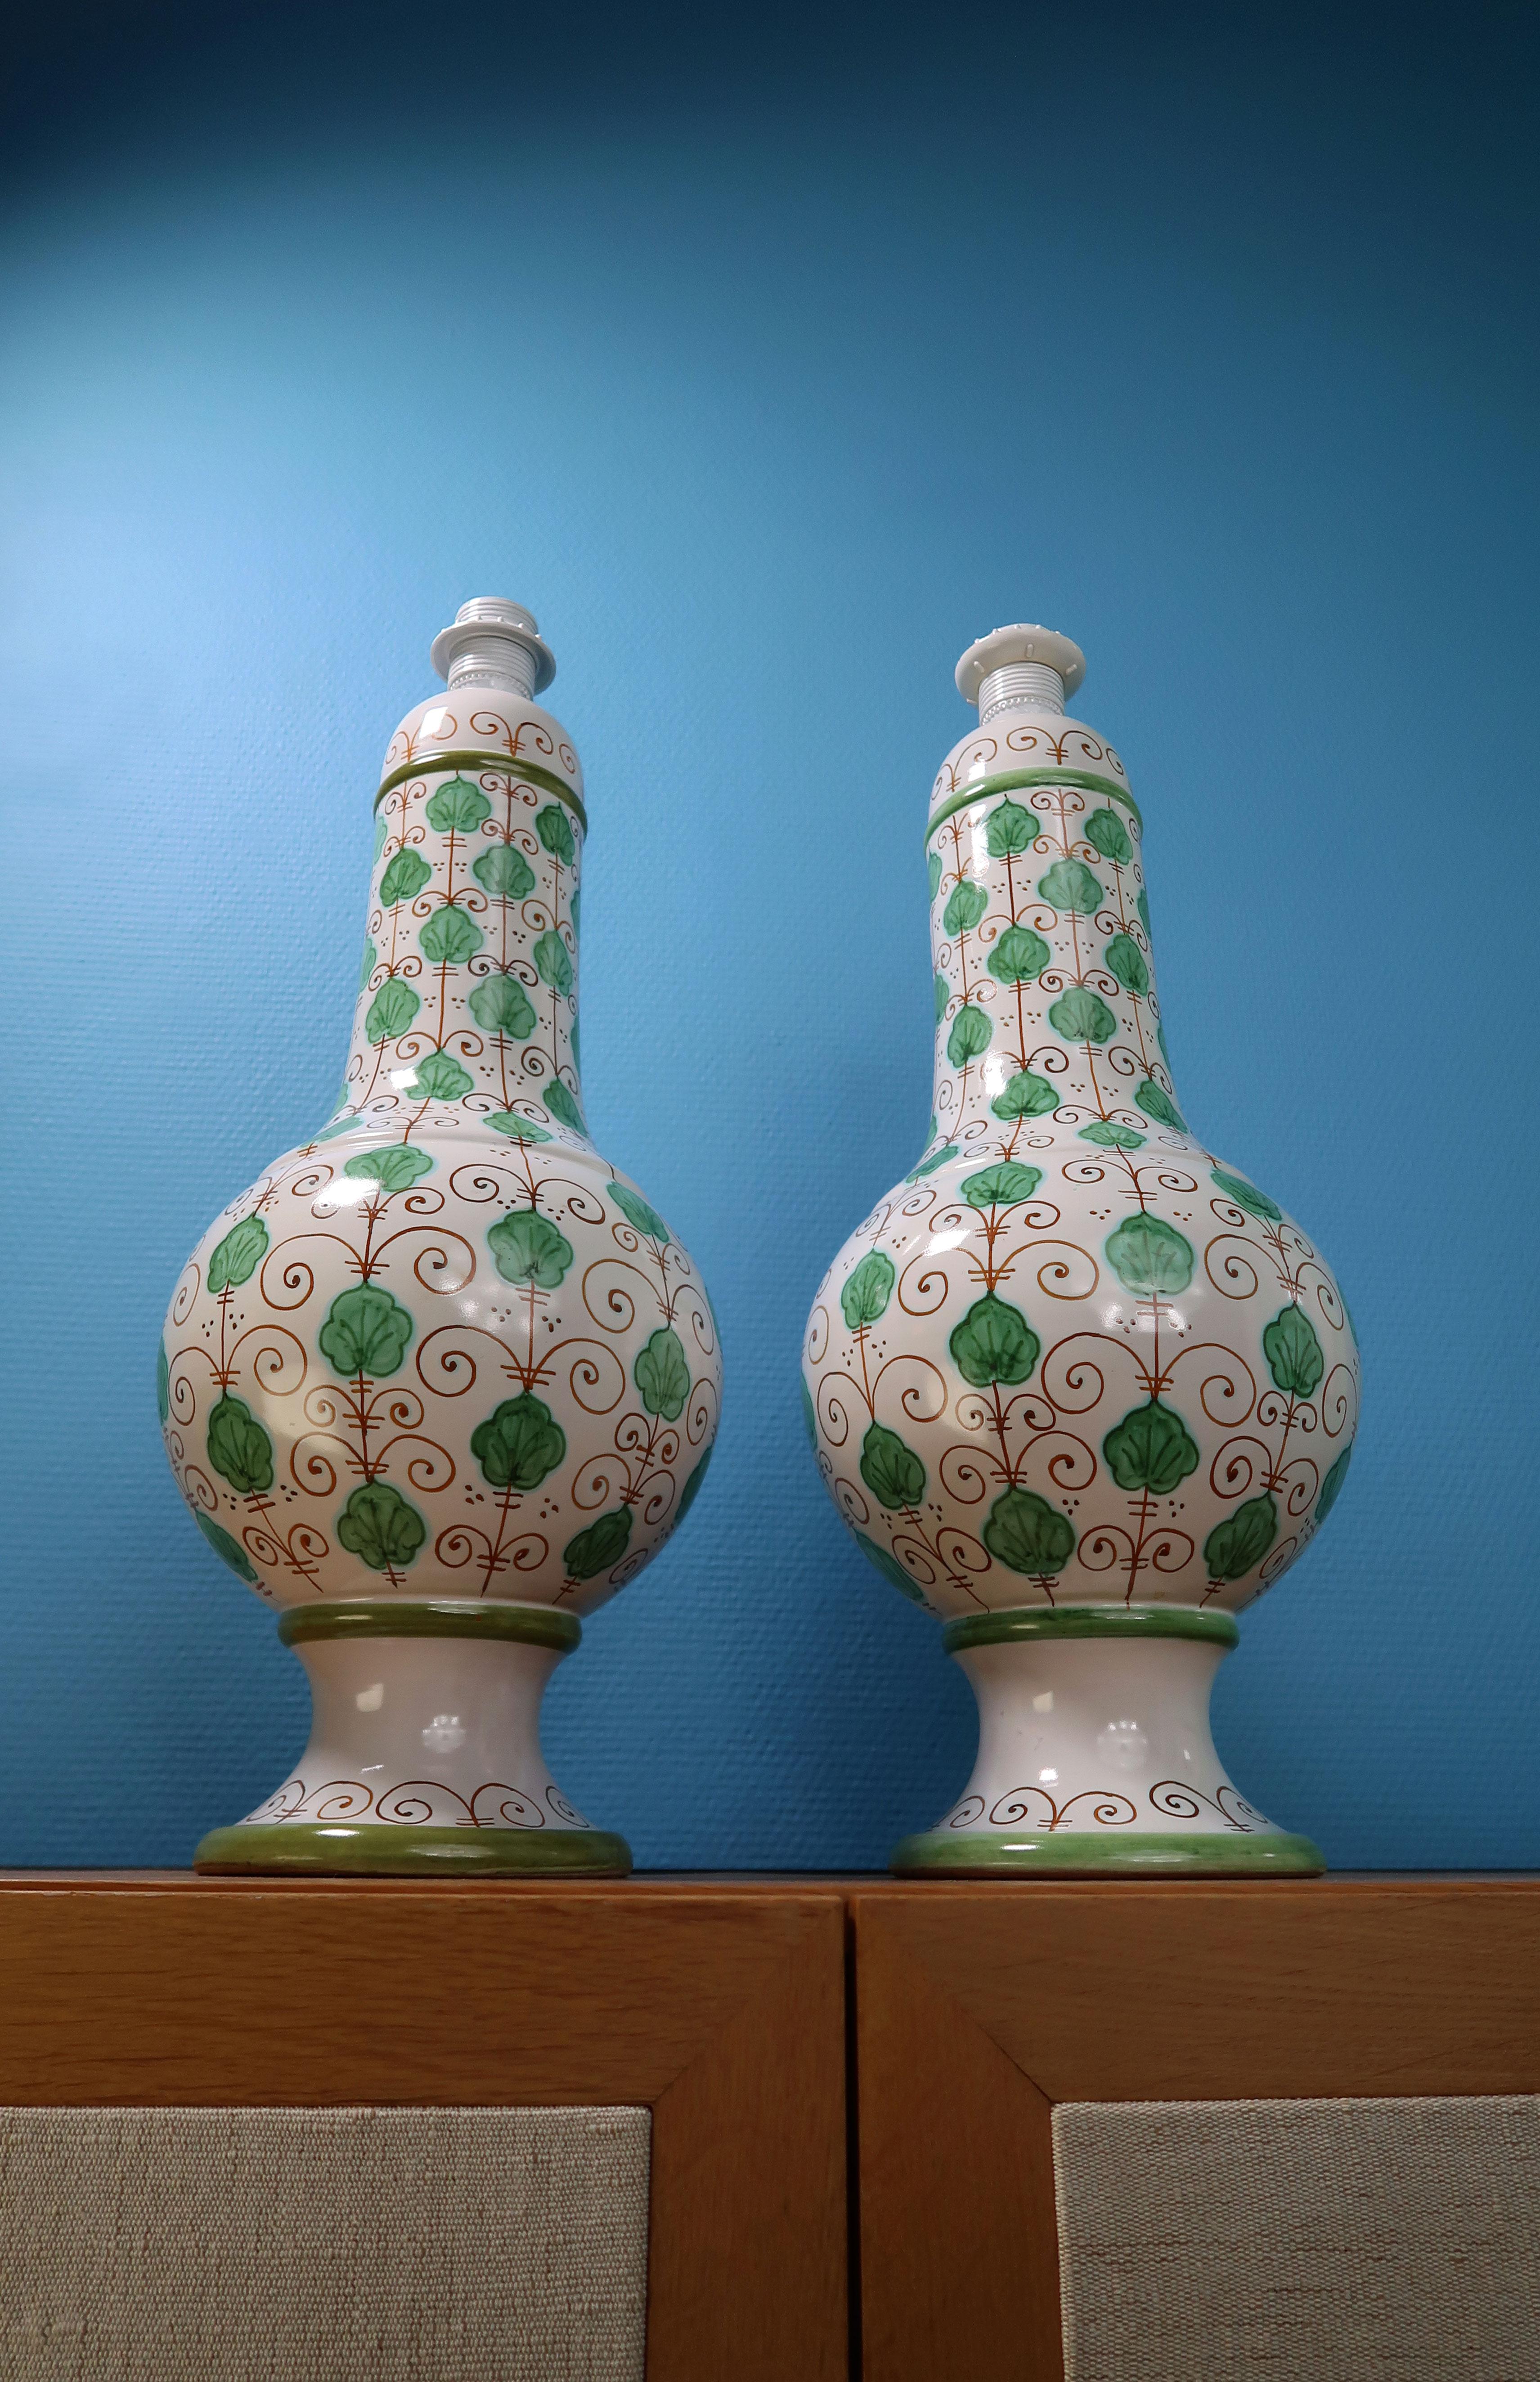 Exceptionnelle paire de lampes de table en céramique italiennes du milieu du siècle dernier, hautes et courbes. Base émaillée blanche avec des feuilles vertes au toucher tropical peintes à la main et des lignes courbes brun caramel et un décor